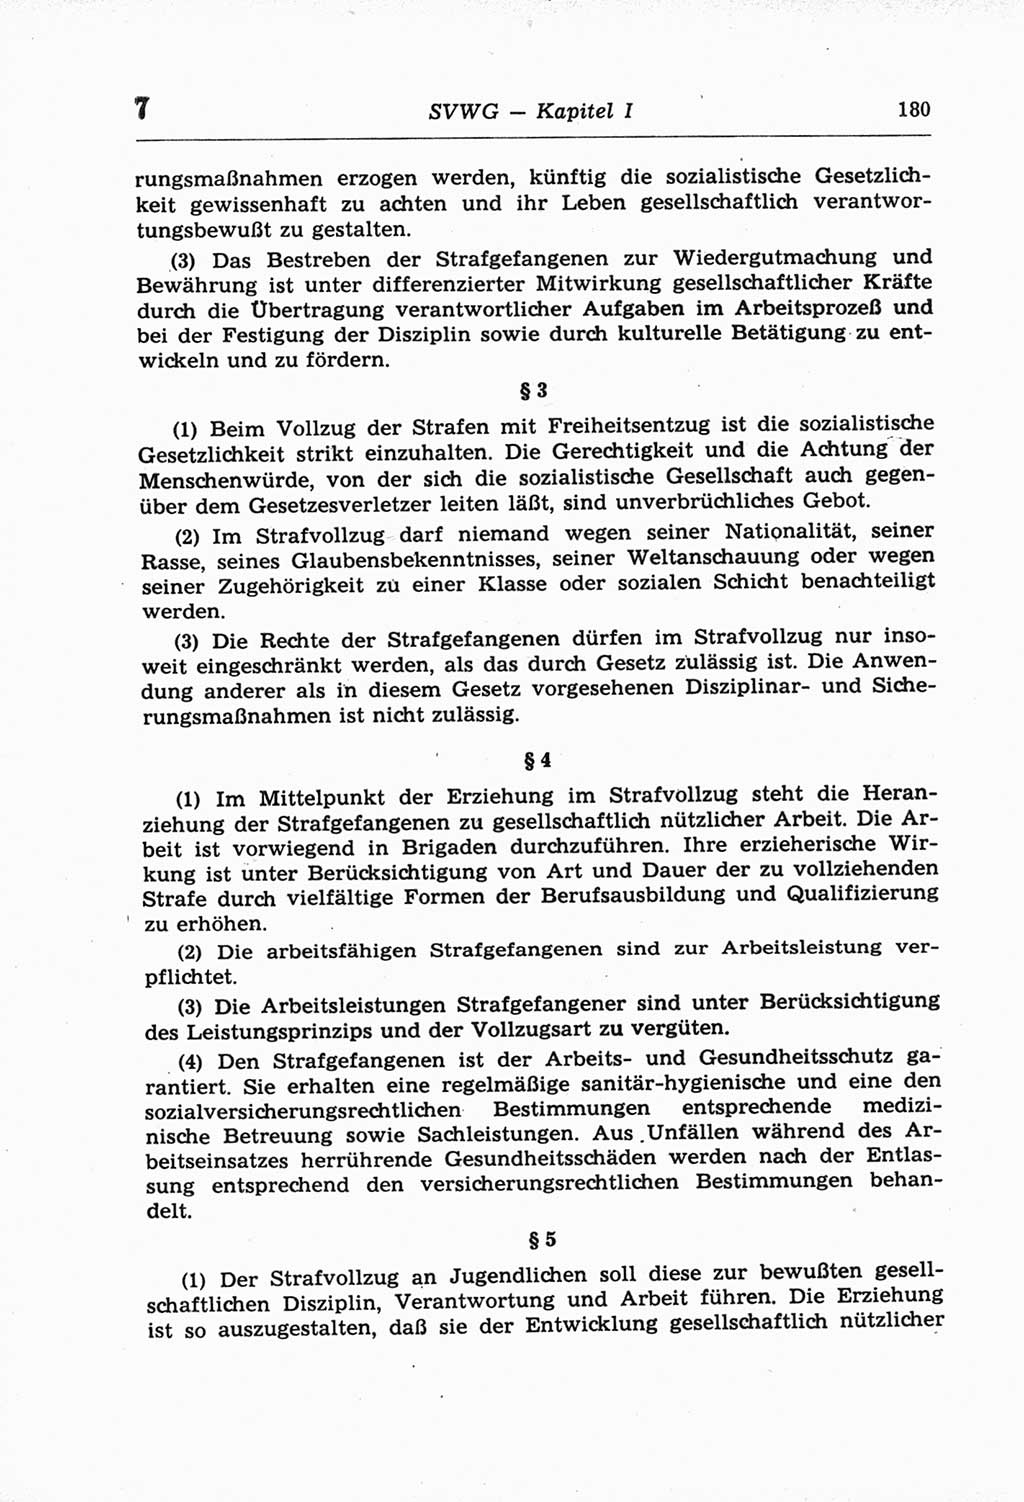 Strafprozeßordnung (StPO) der Deutschen Demokratischen Republik (DDR) und angrenzende Gesetze und Bestimmungen 1968, Seite 180 (StPO Ges. Bstgn. DDR 1968, S. 180)